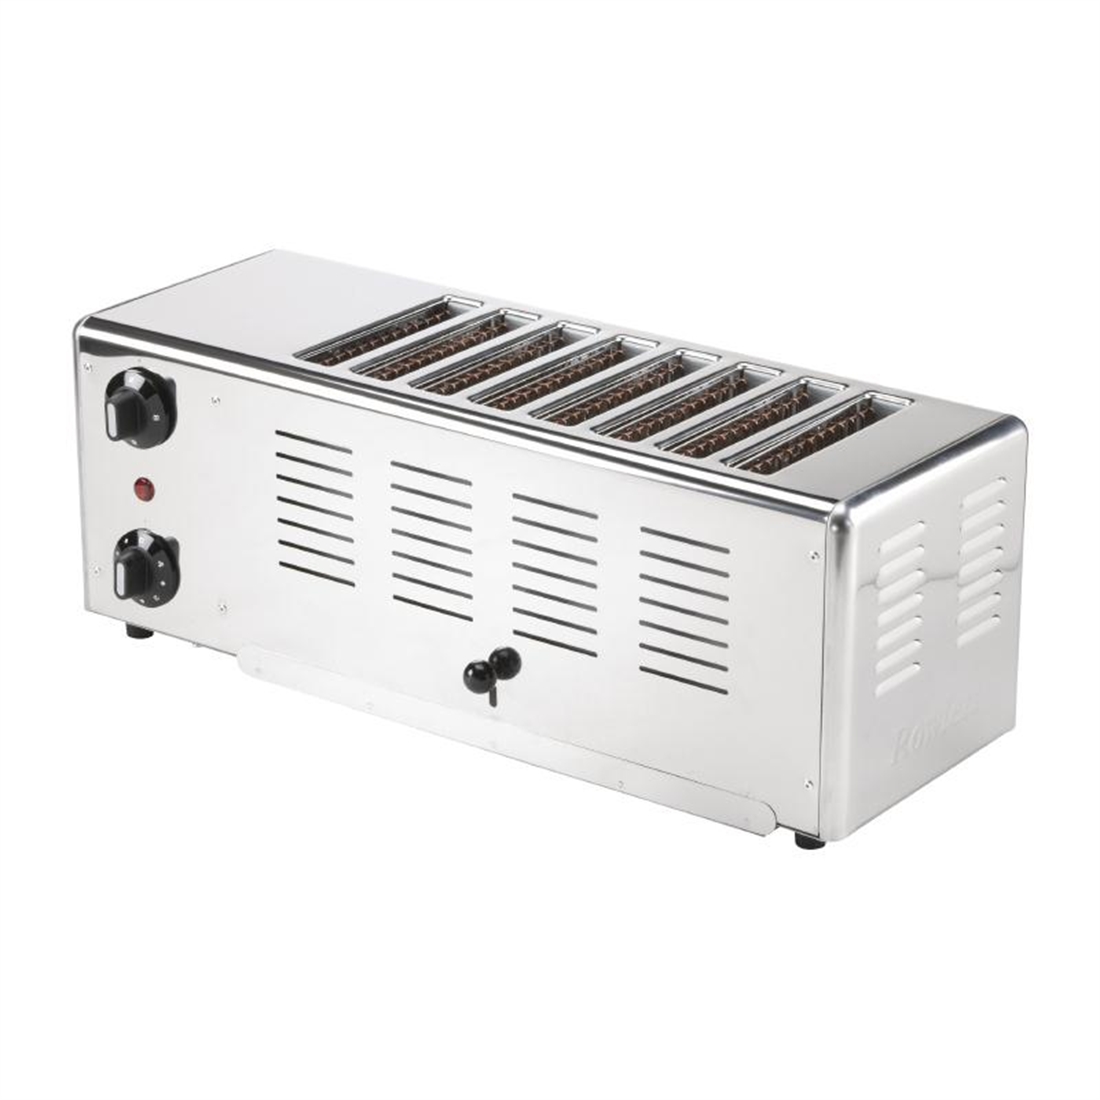 Rowlett Premier 8 Slot Toaster